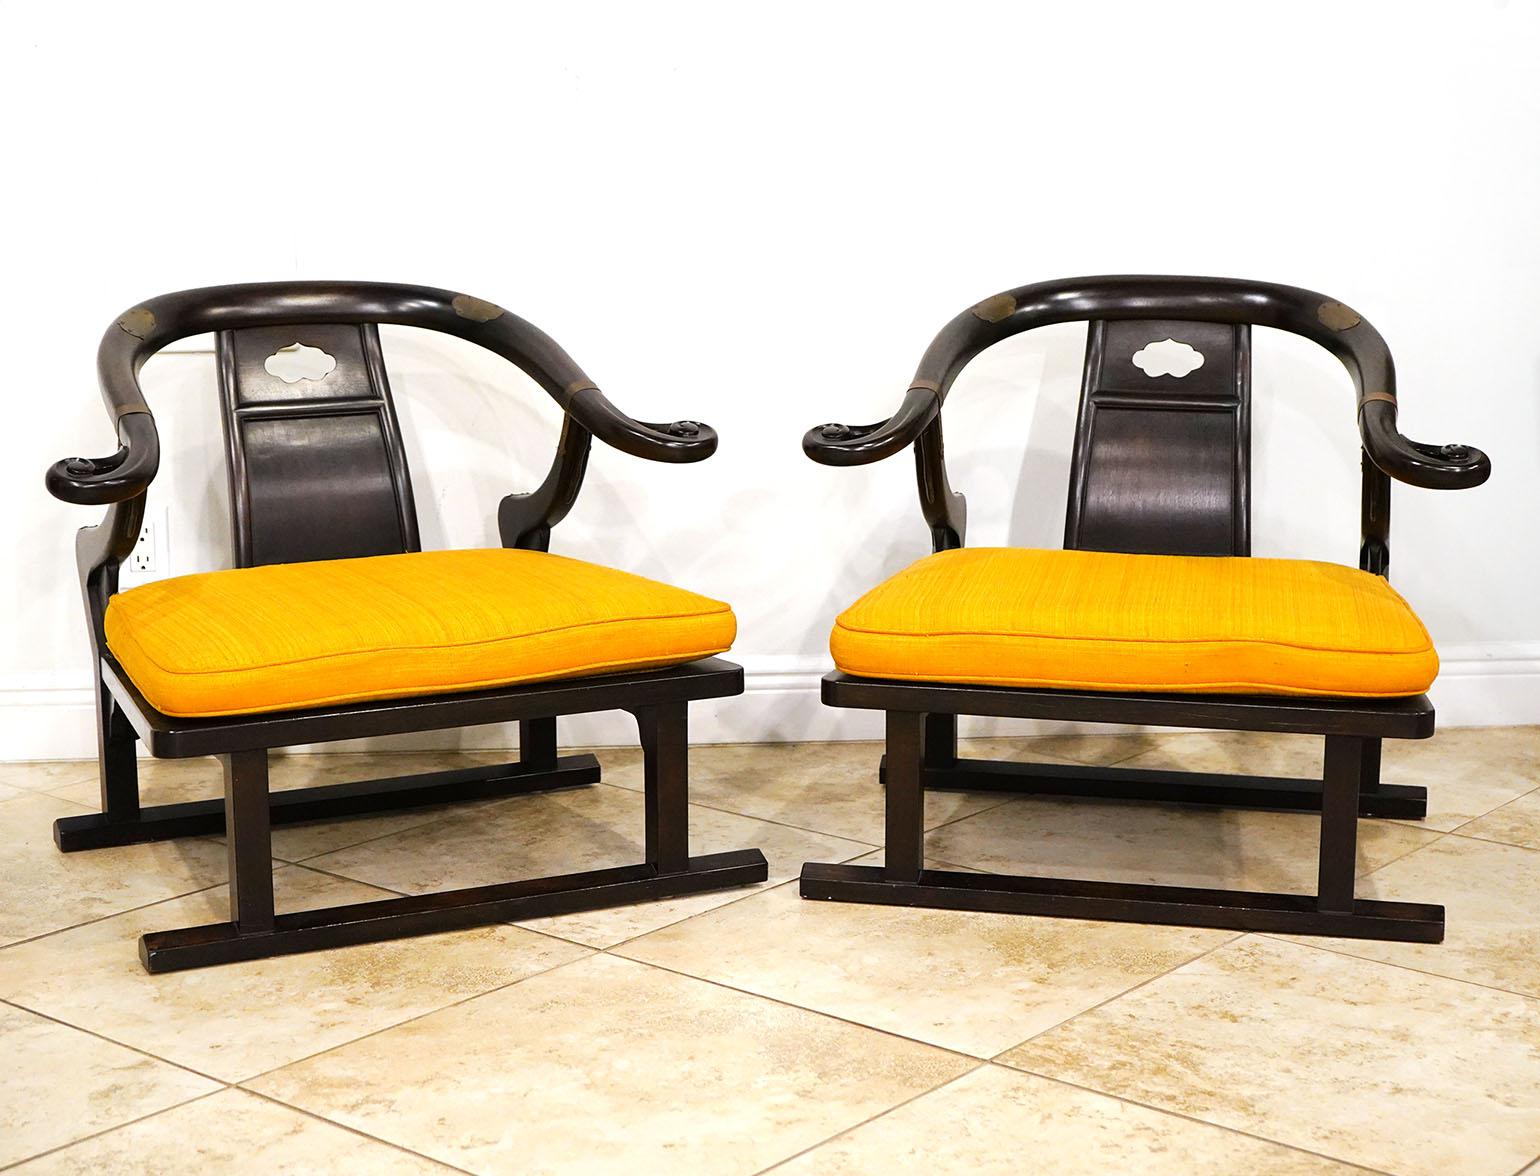 Paire de chaises longues de style chinois par Baker Furniture et conçues par Michael Taylor. Bois brun foncé avec accents en laiton. Labellisé sur le fond. Design/One.